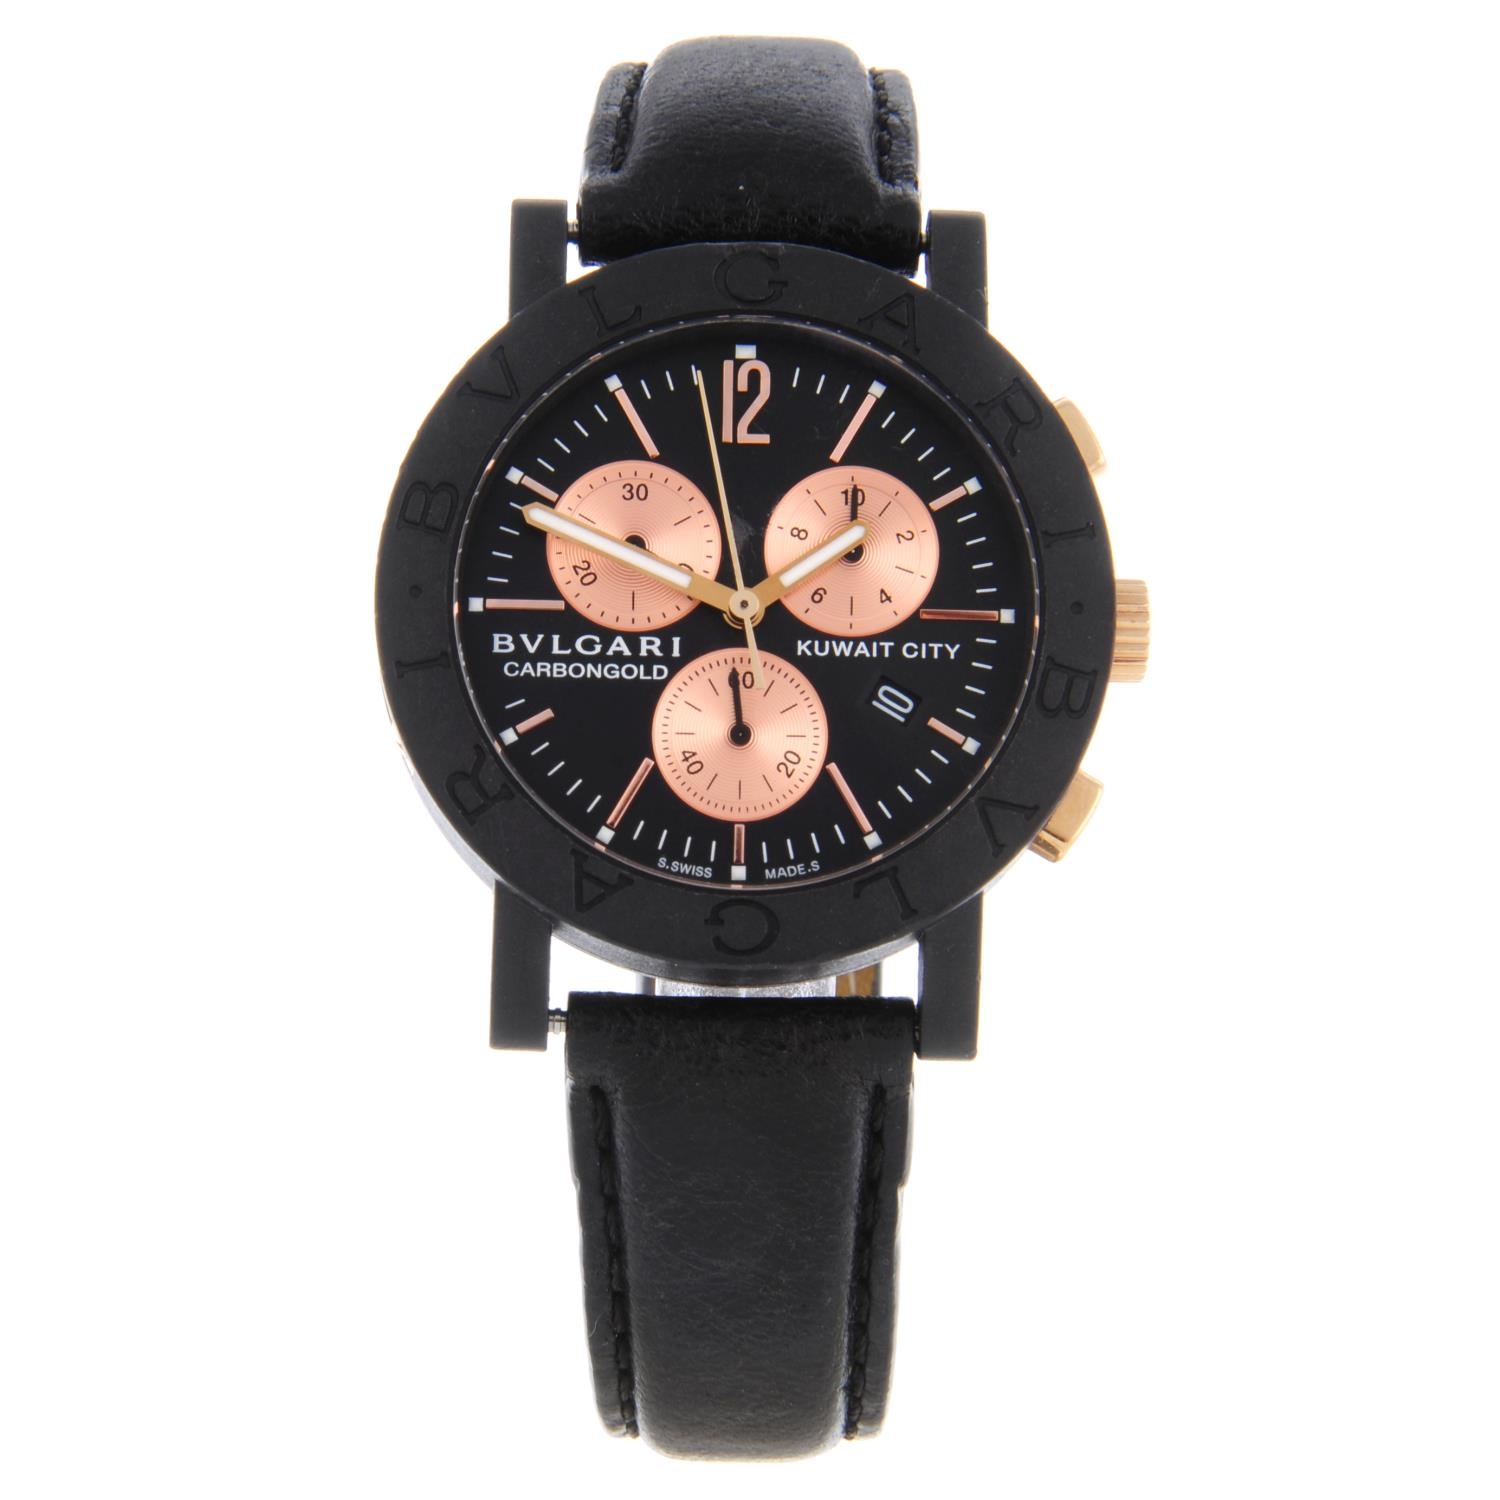 Kuwait City chronograph wrist watch 